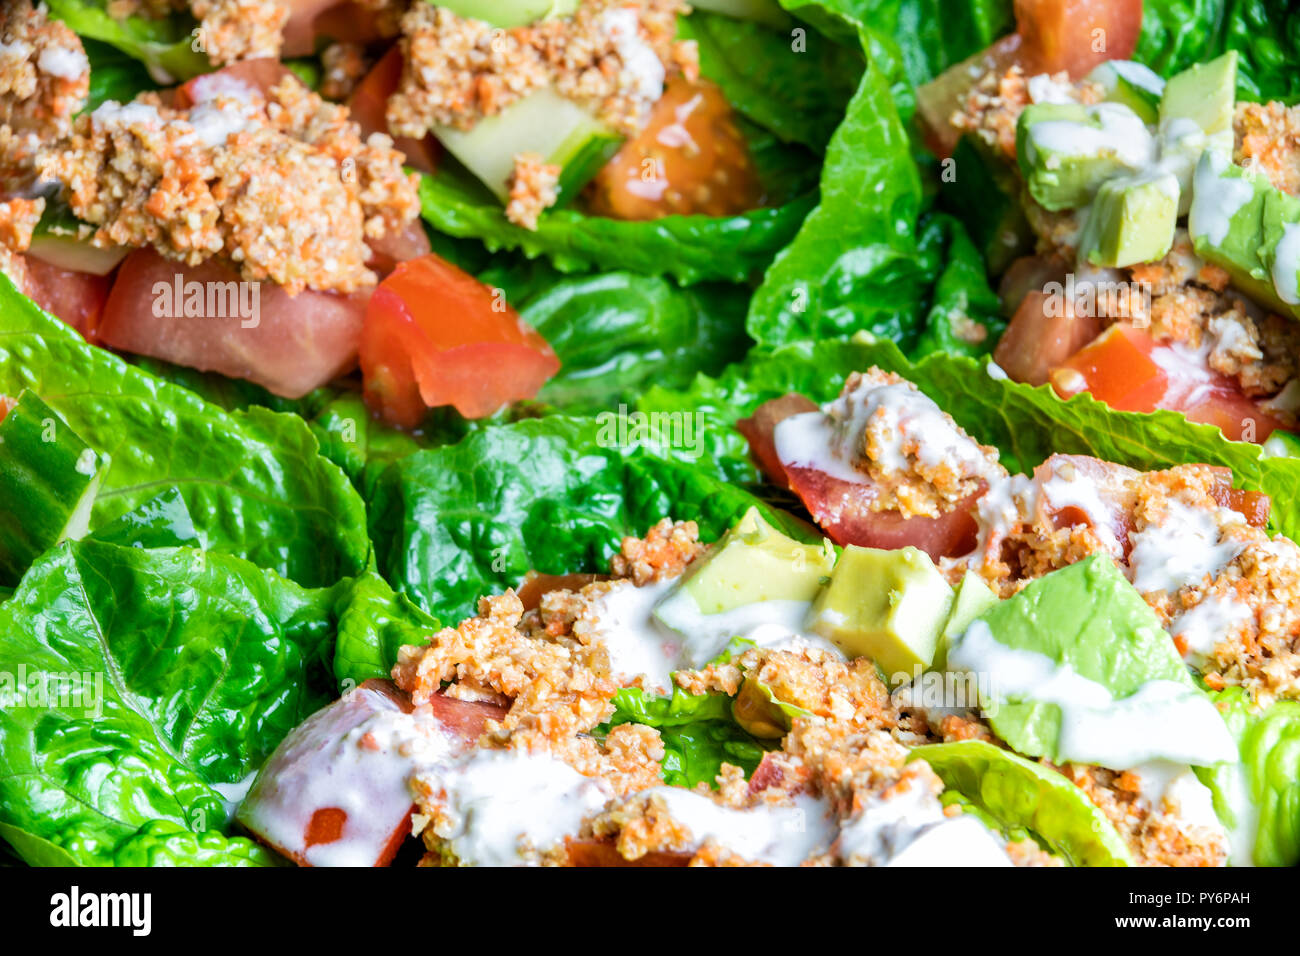 Makro Nahaufnahme von Gemüse, grünes Blatt, grünen Salat aus Kopfsalat, Gurken, Tomaten, Raw vegan Mutter Fleisch, Avocado, Textur, Detail Stockfoto